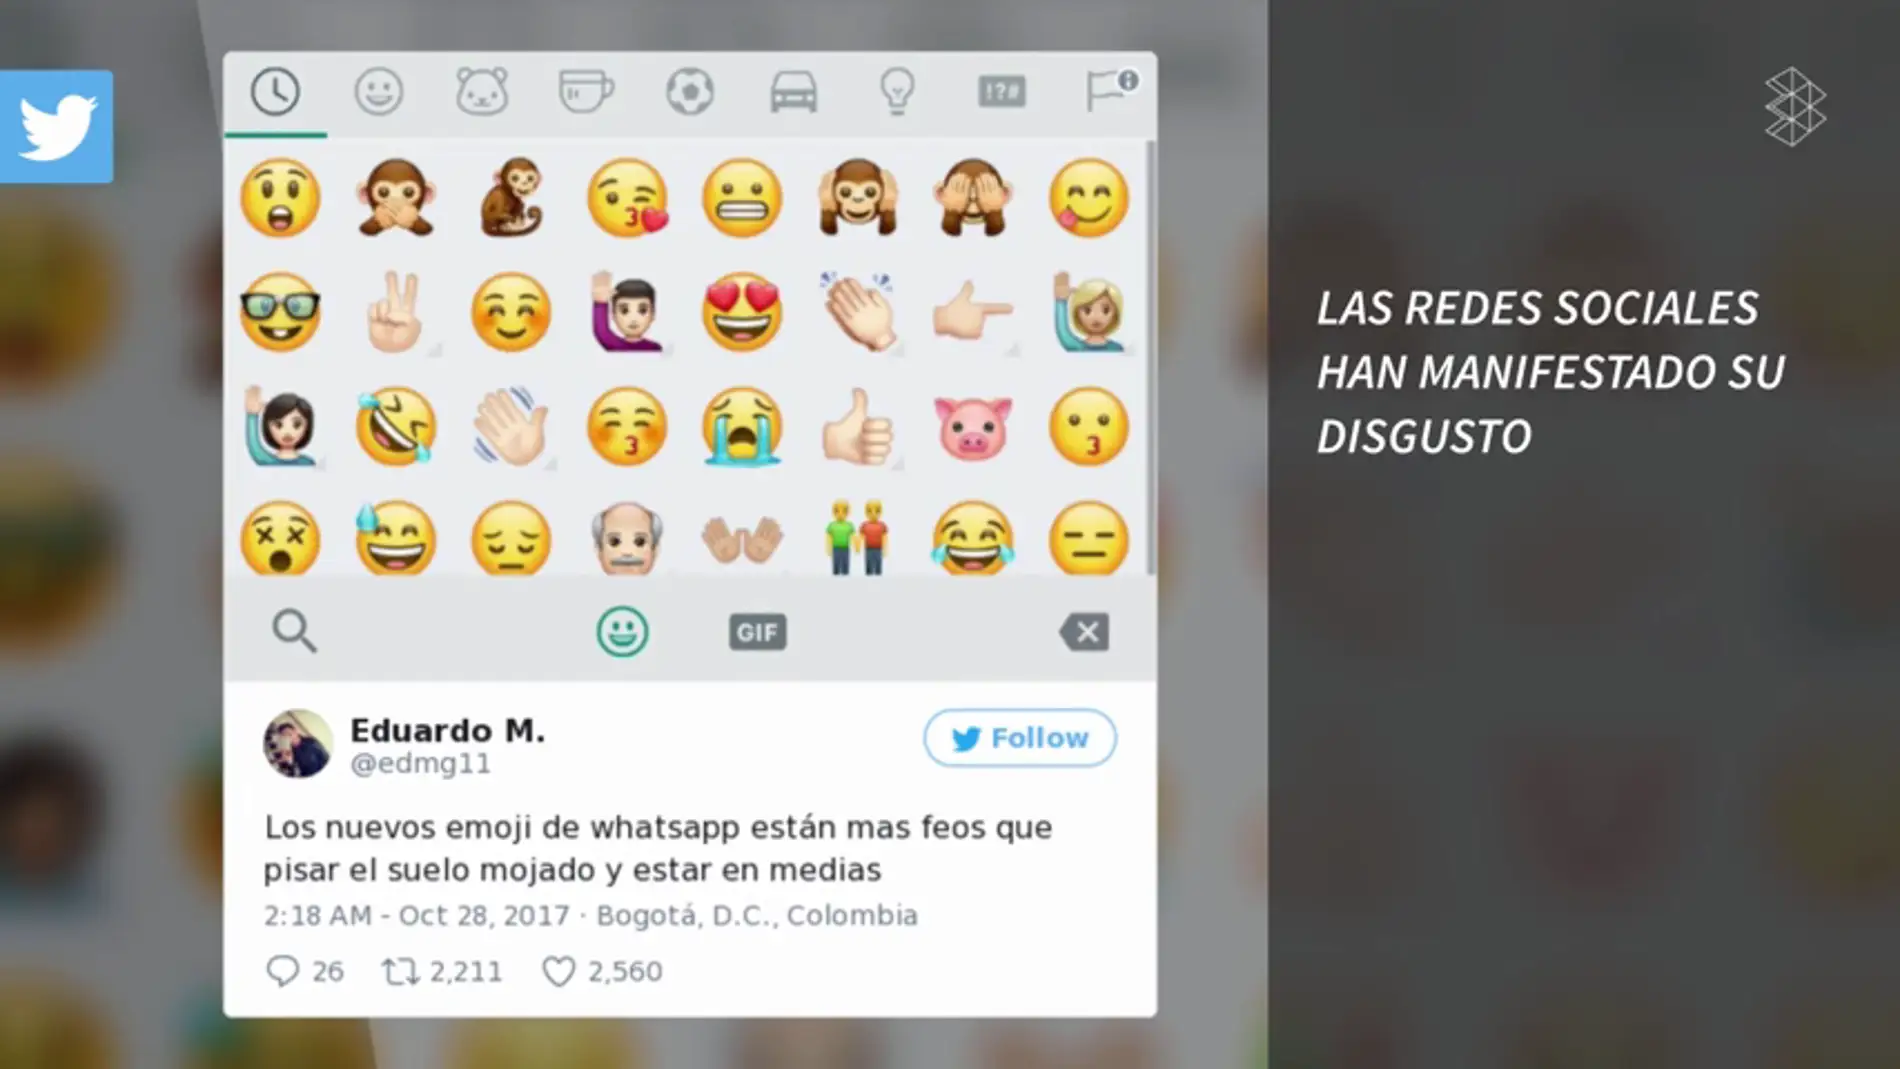 Las redes sociales lloran la desaparición de un emoji de Whastsapp